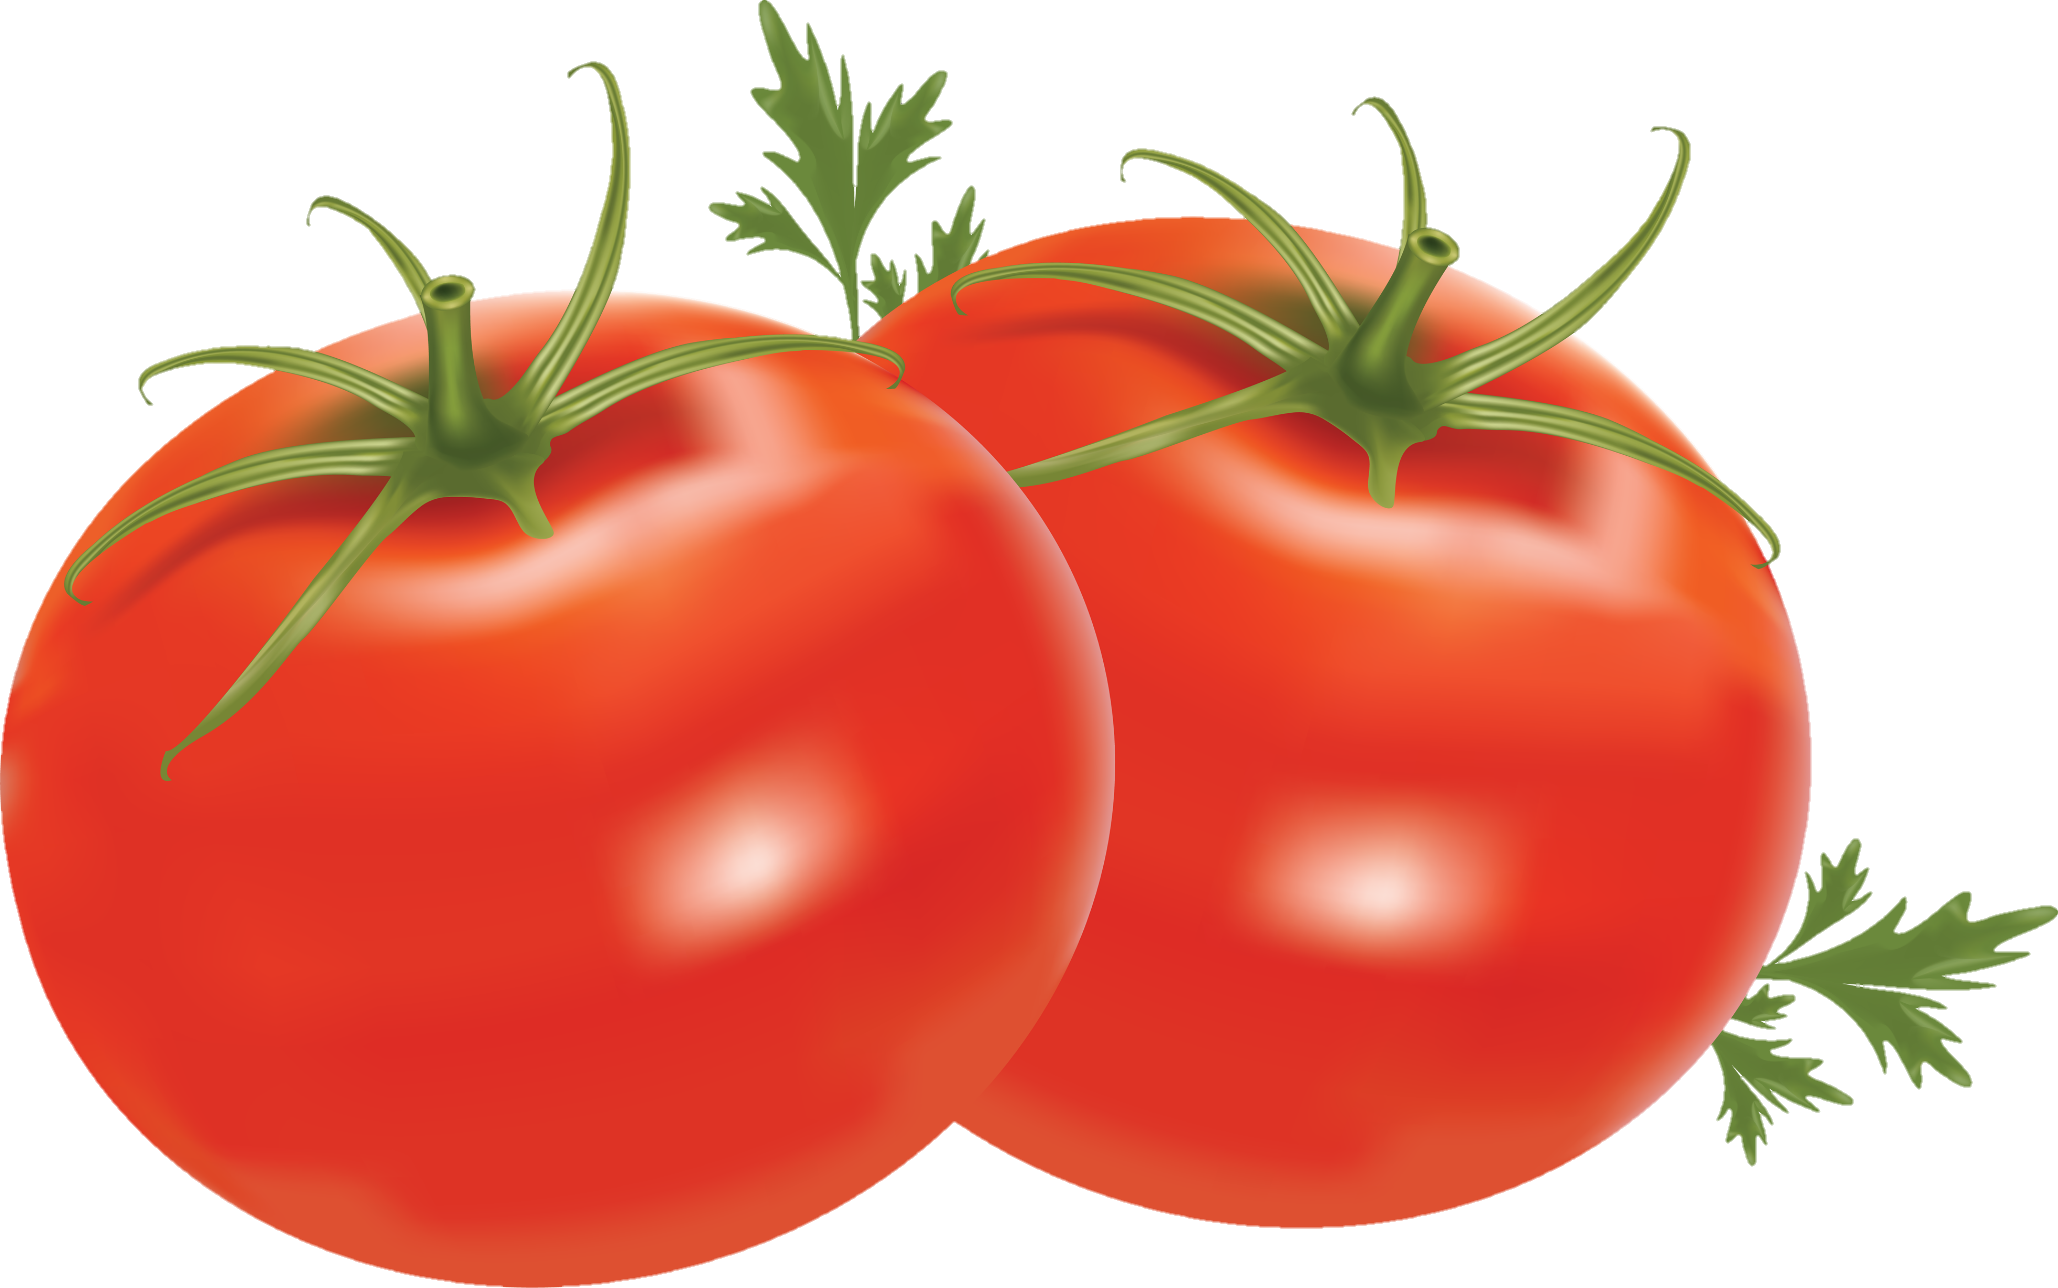 Tomato-24-3